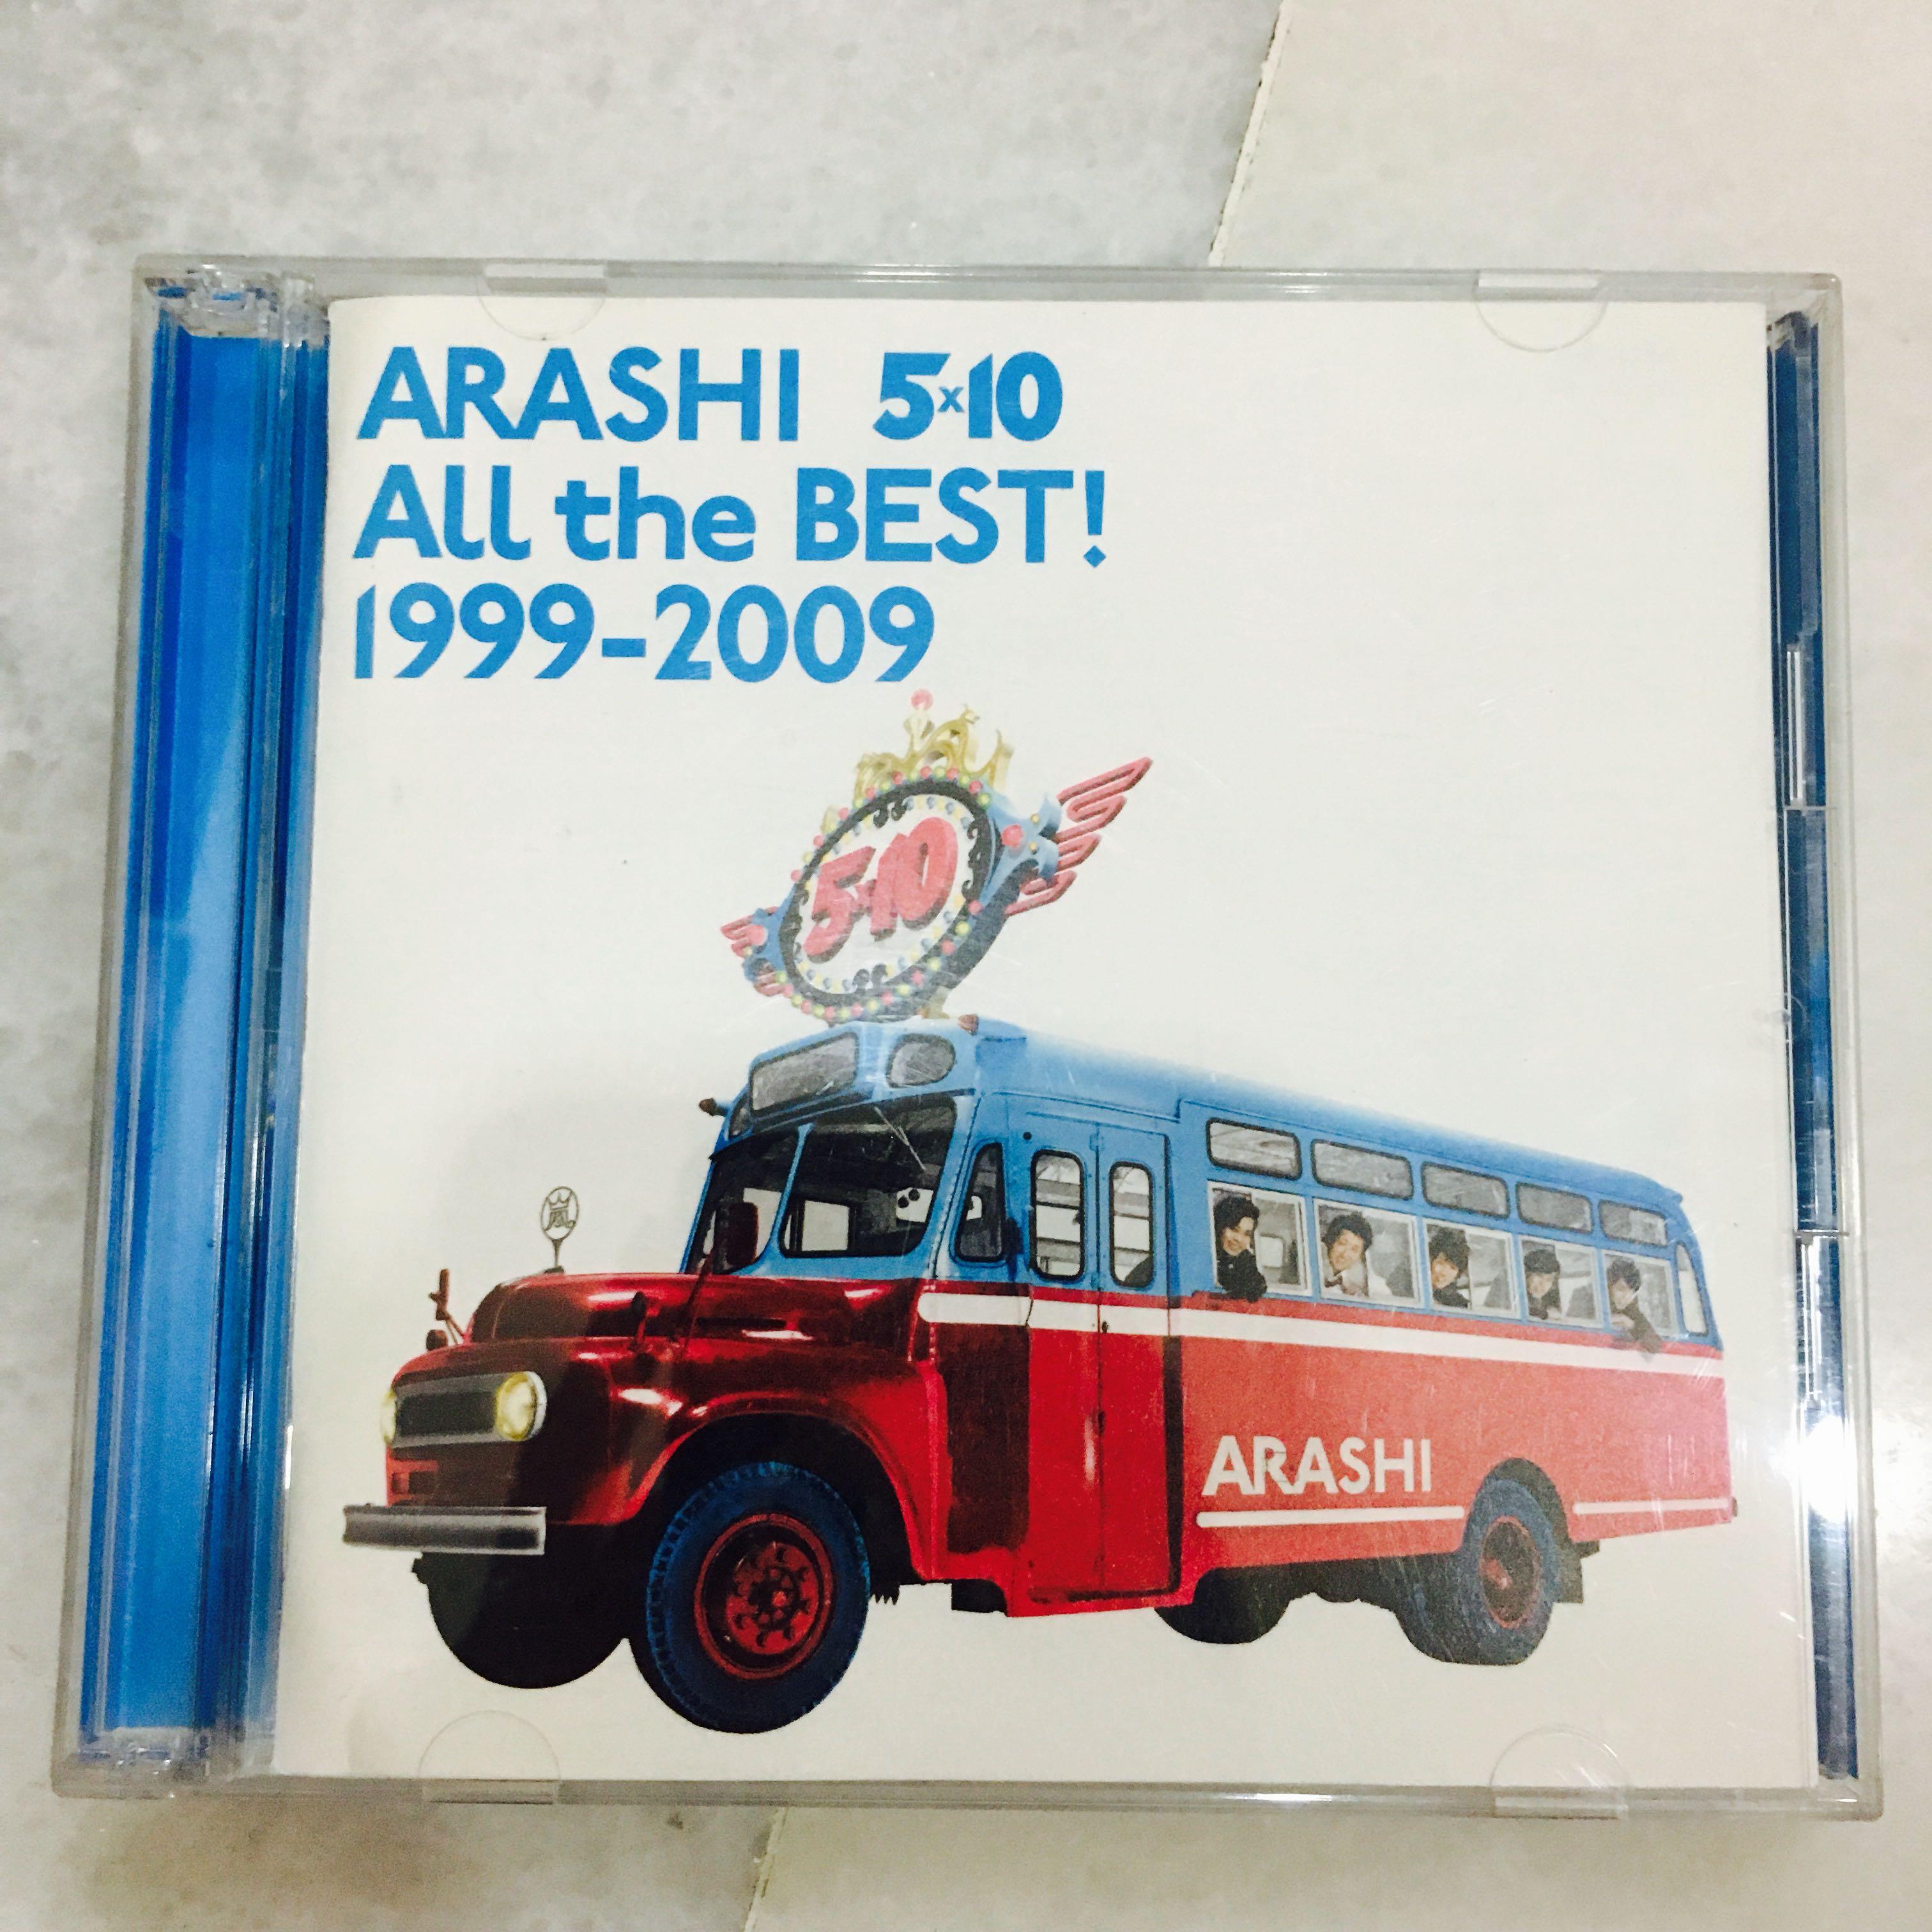 Arashi 嵐 5 10 All The Best 1999 09 Cd Album Japanese Band Singer Music Media Cd S Dvd S Other Media On Carousell